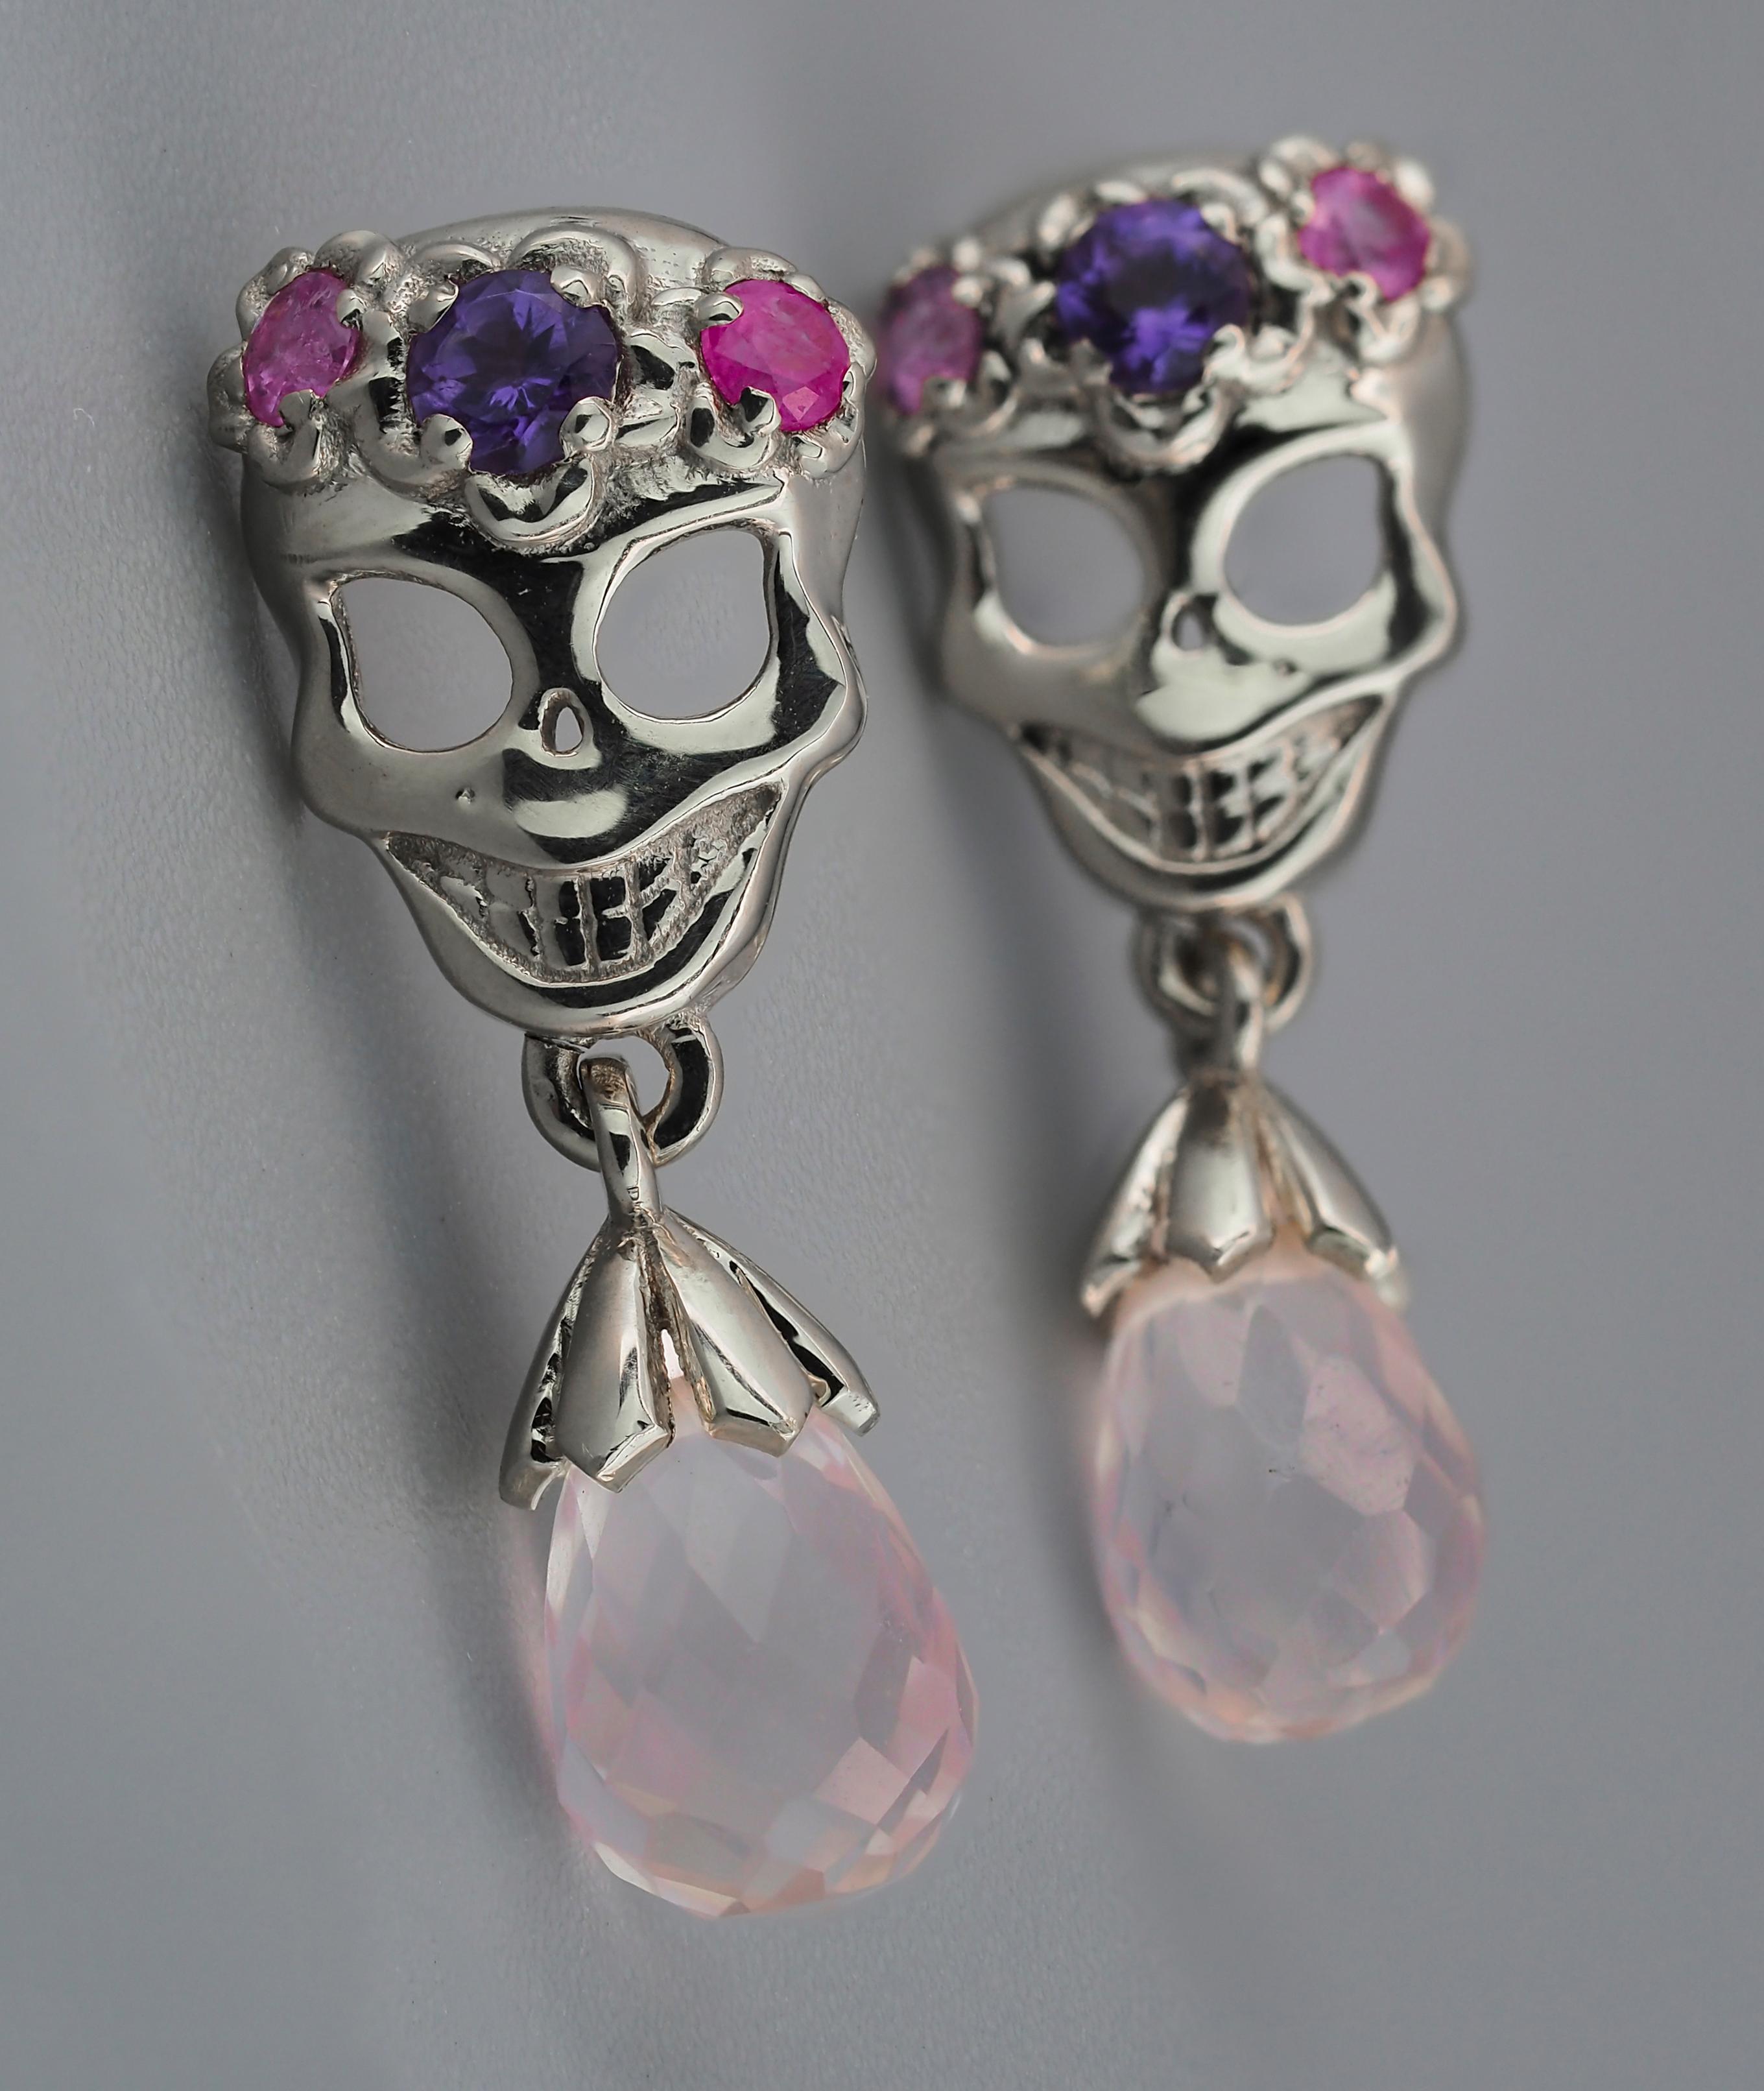 Briolette Cut 14k Gold Skull Earrings Studs. Halloween party jewelry. For Sale